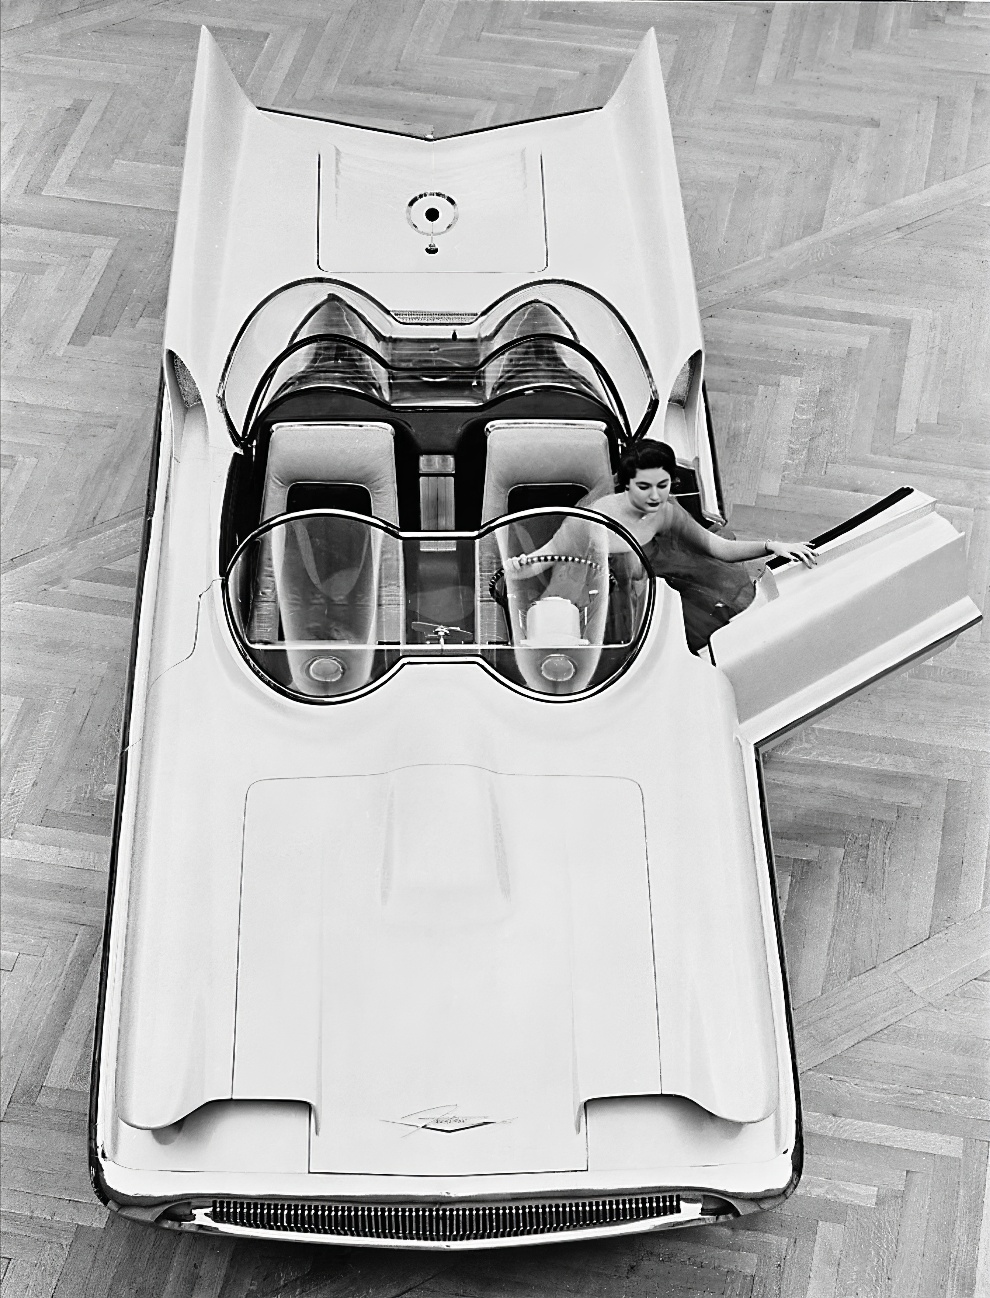 1955 Lincoln Futura Concept Car 4 